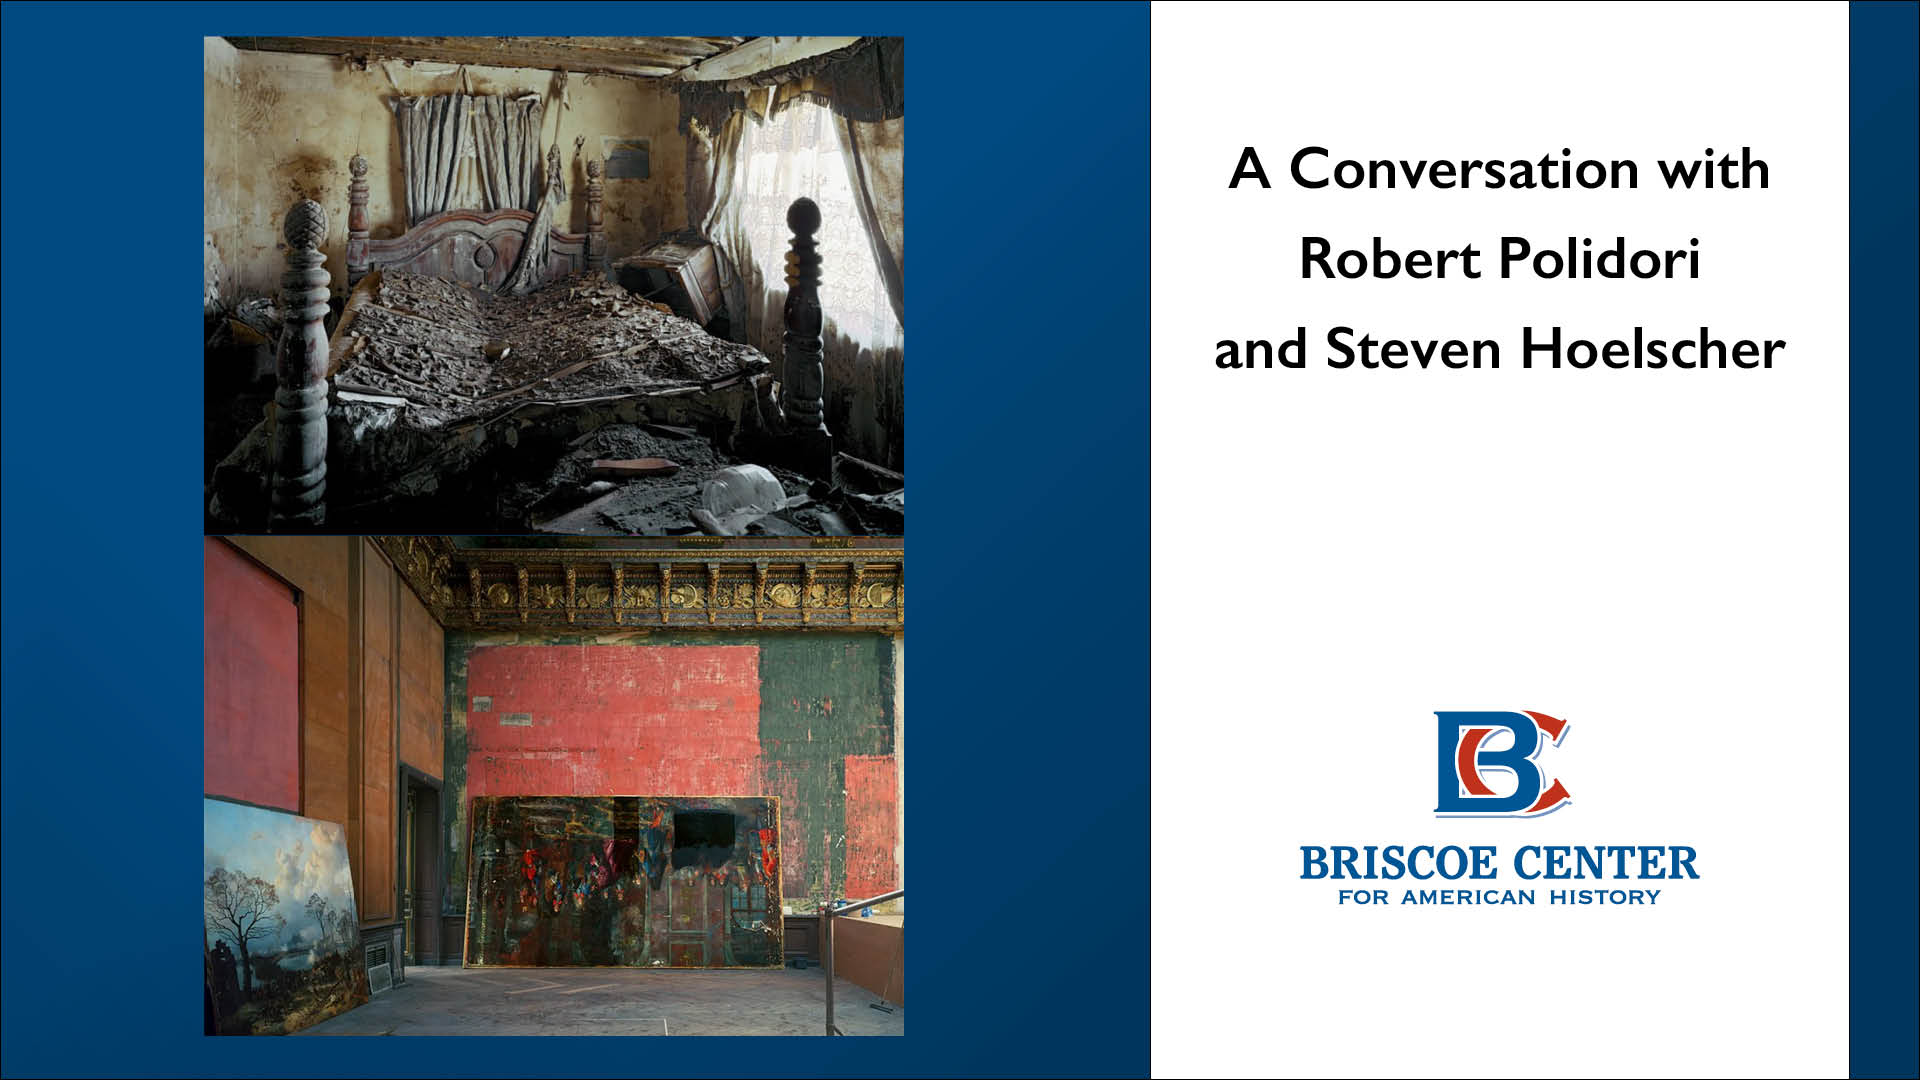 A Conversation with Robert Polidori and Steven Hoelscher